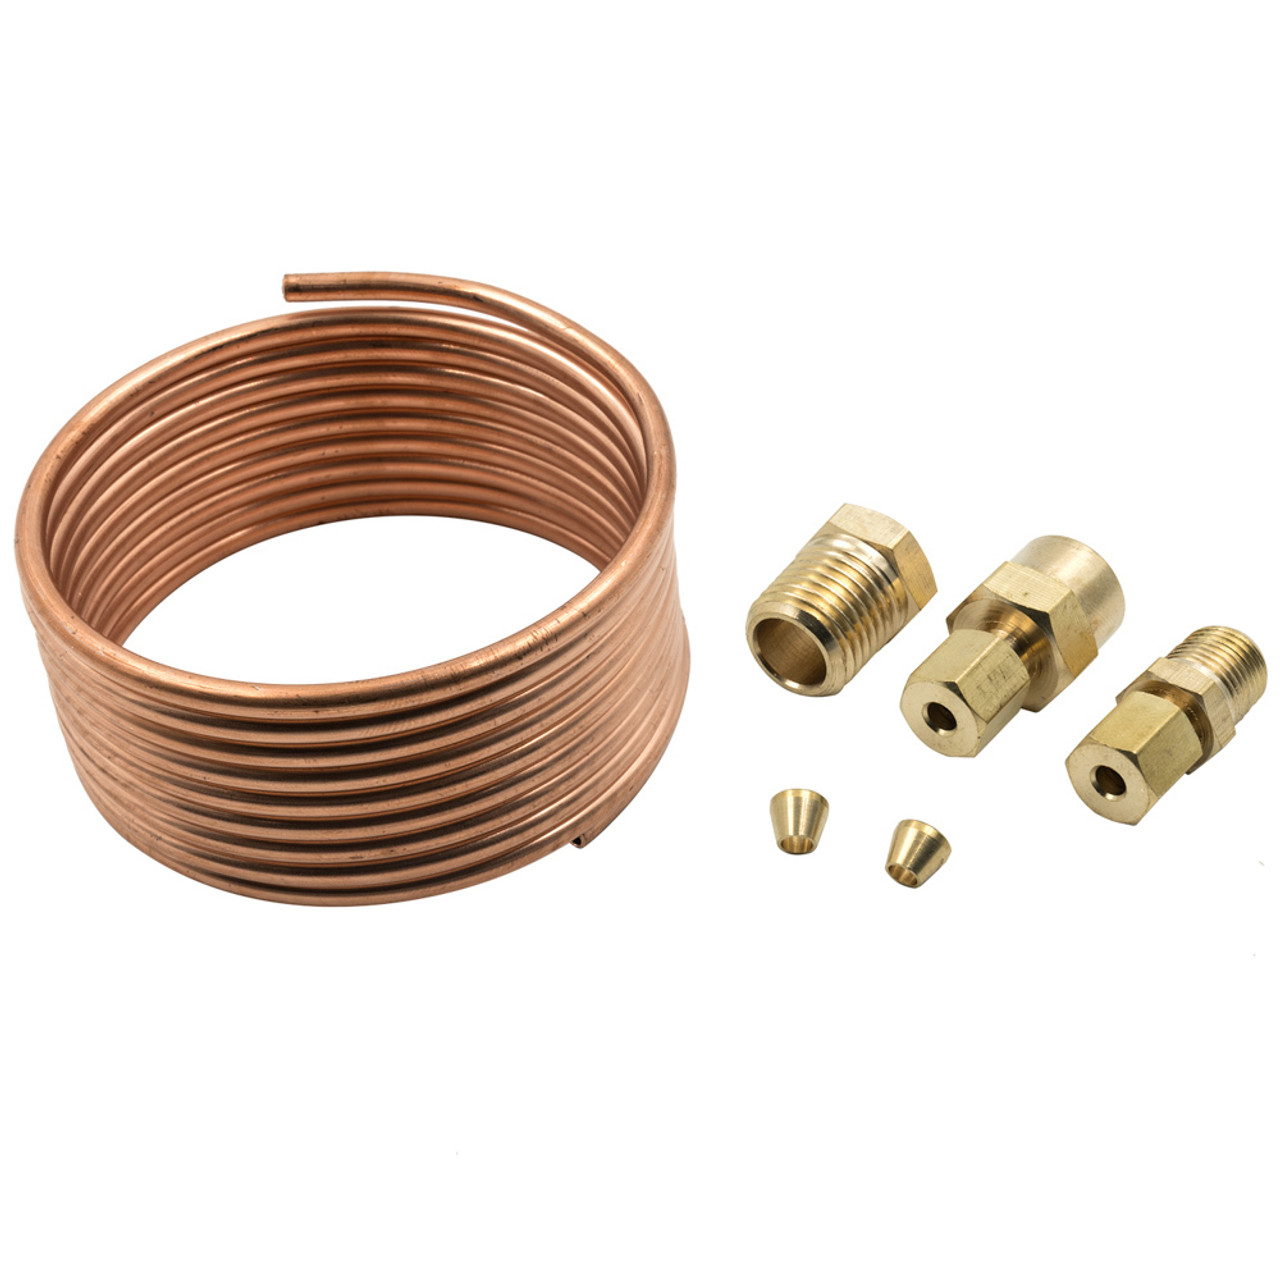 Copper Tubing Kit 1/8in 6ft